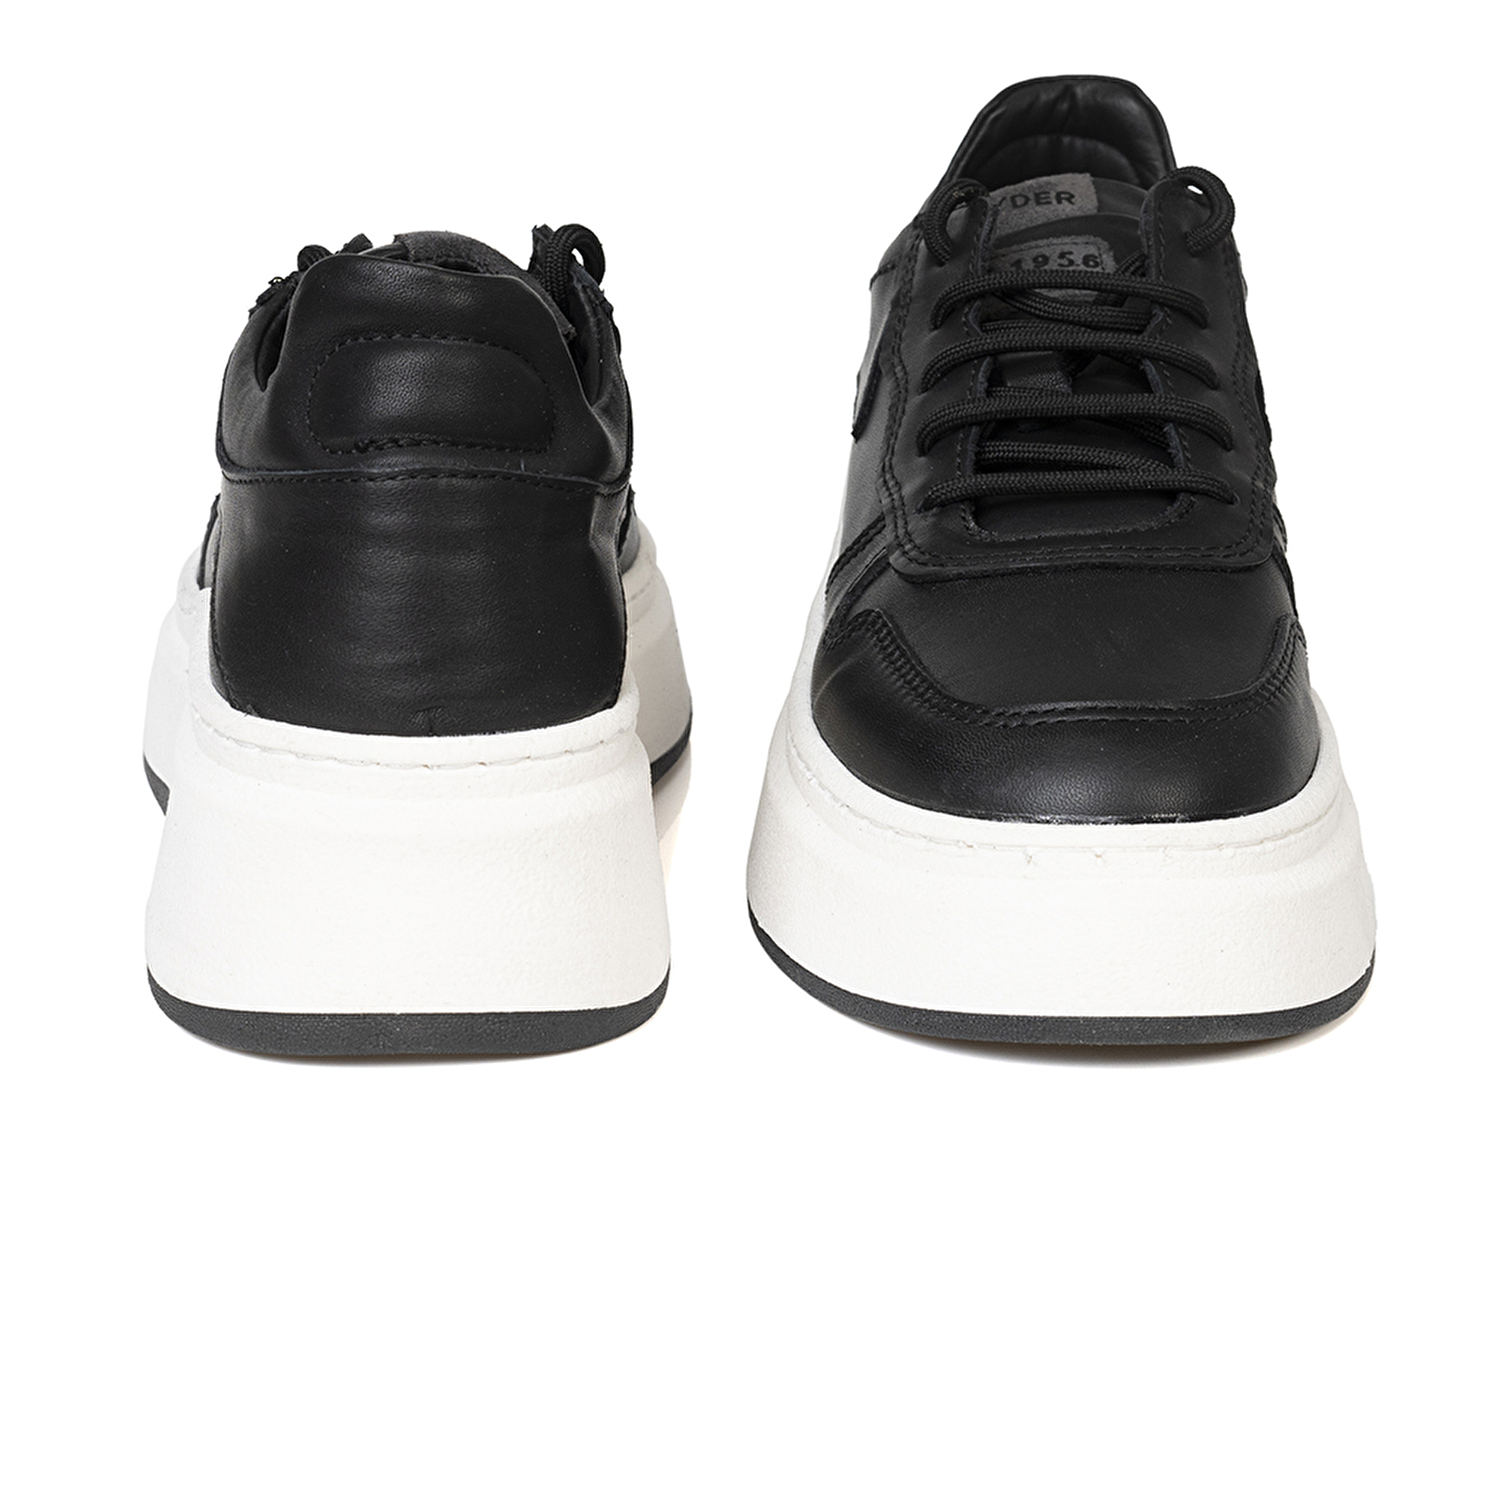 Kadın Siyah Hakiki Deri Sneaker Ayakkabı 3K2SA33120-6